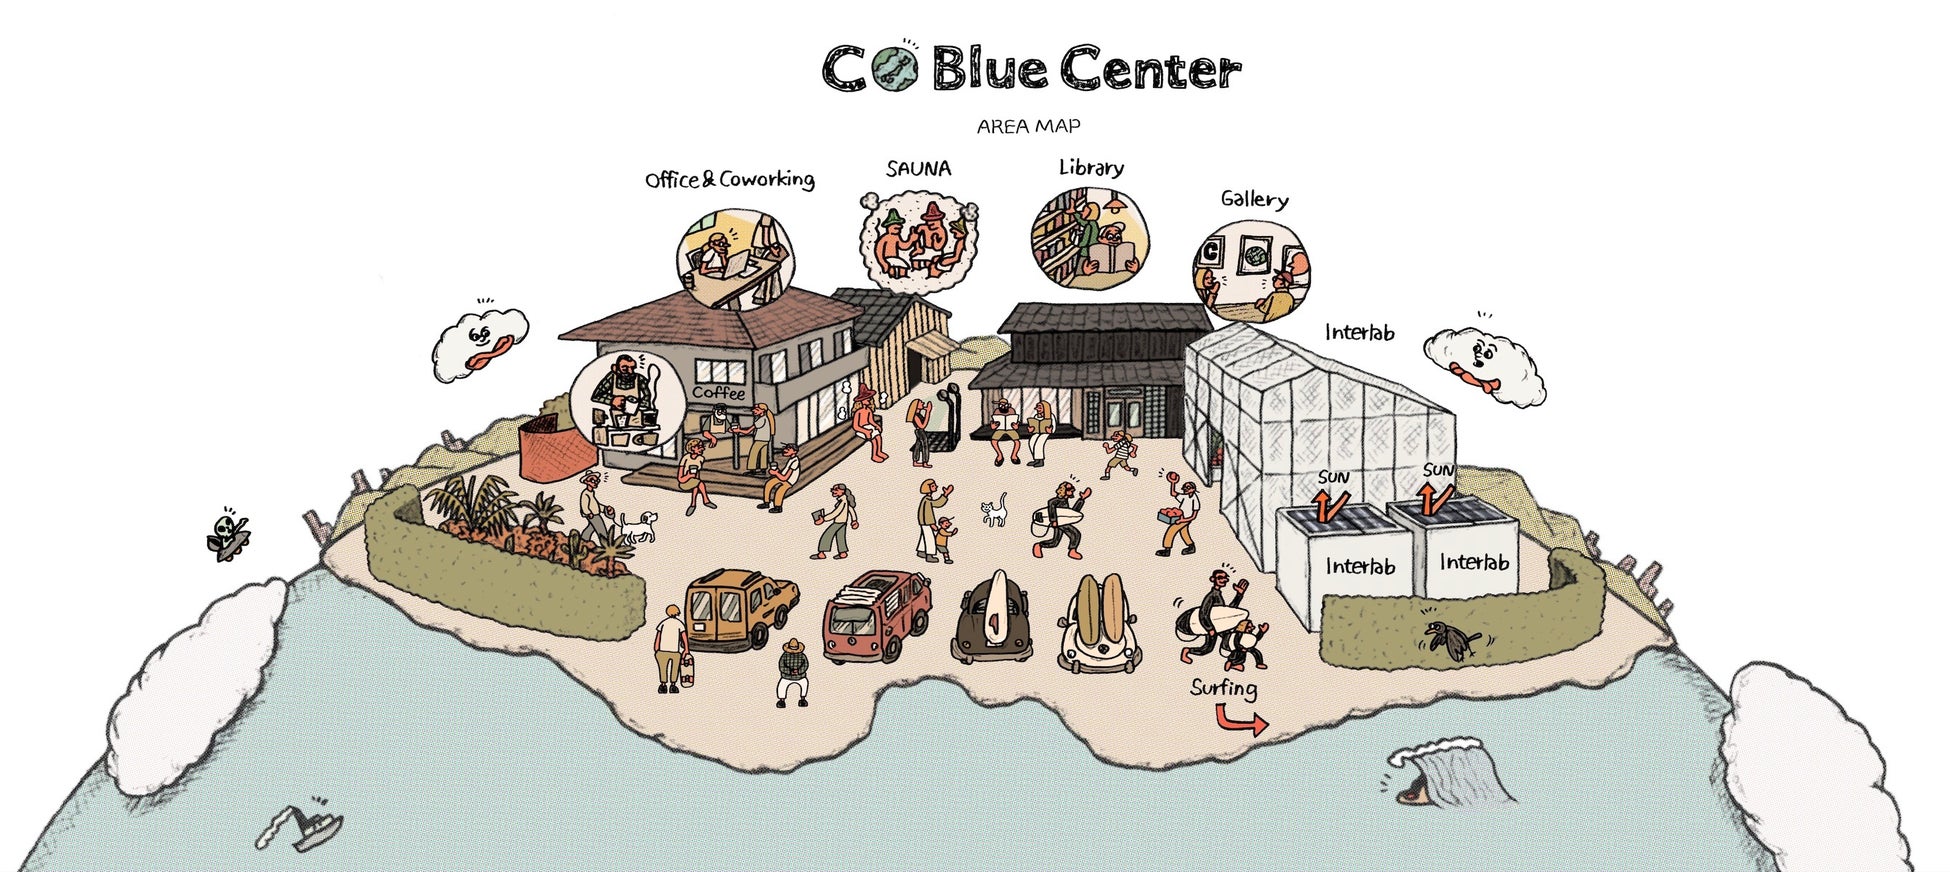 海洋プラを地域通貨にアップサイクル！伊勢志摩・国府の浜で始まるビーチクリーン✖地域経済循環プロジェクトのサブ画像2_複数のオフィス・コワーキングスペース・コーヒースタンド・サウナ・図書室などが複合する「安らぎながら働く場所」